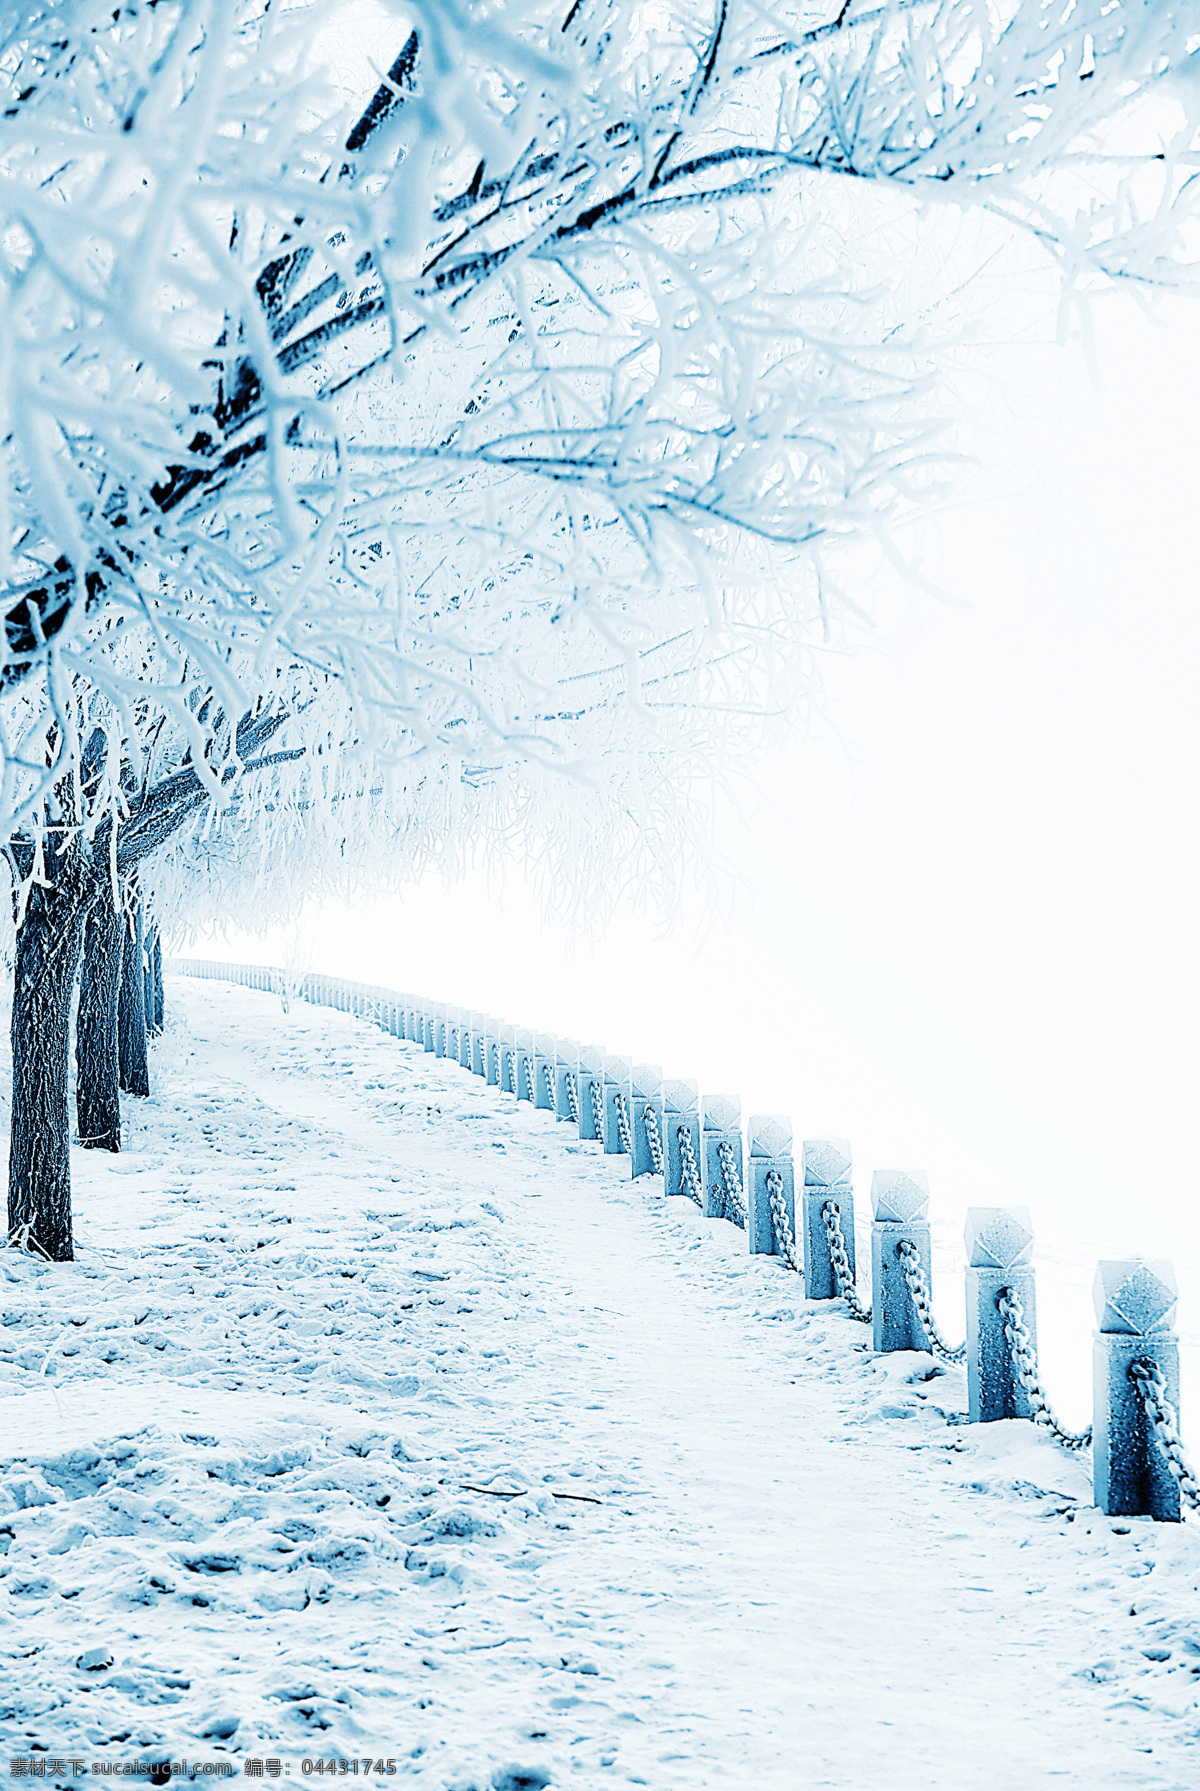 冬天 雪景 冬天雪景 雪地 冬天树木 美丽雪景 梦幻背景 自然风景 冬天风景 雪景图片 风景图片